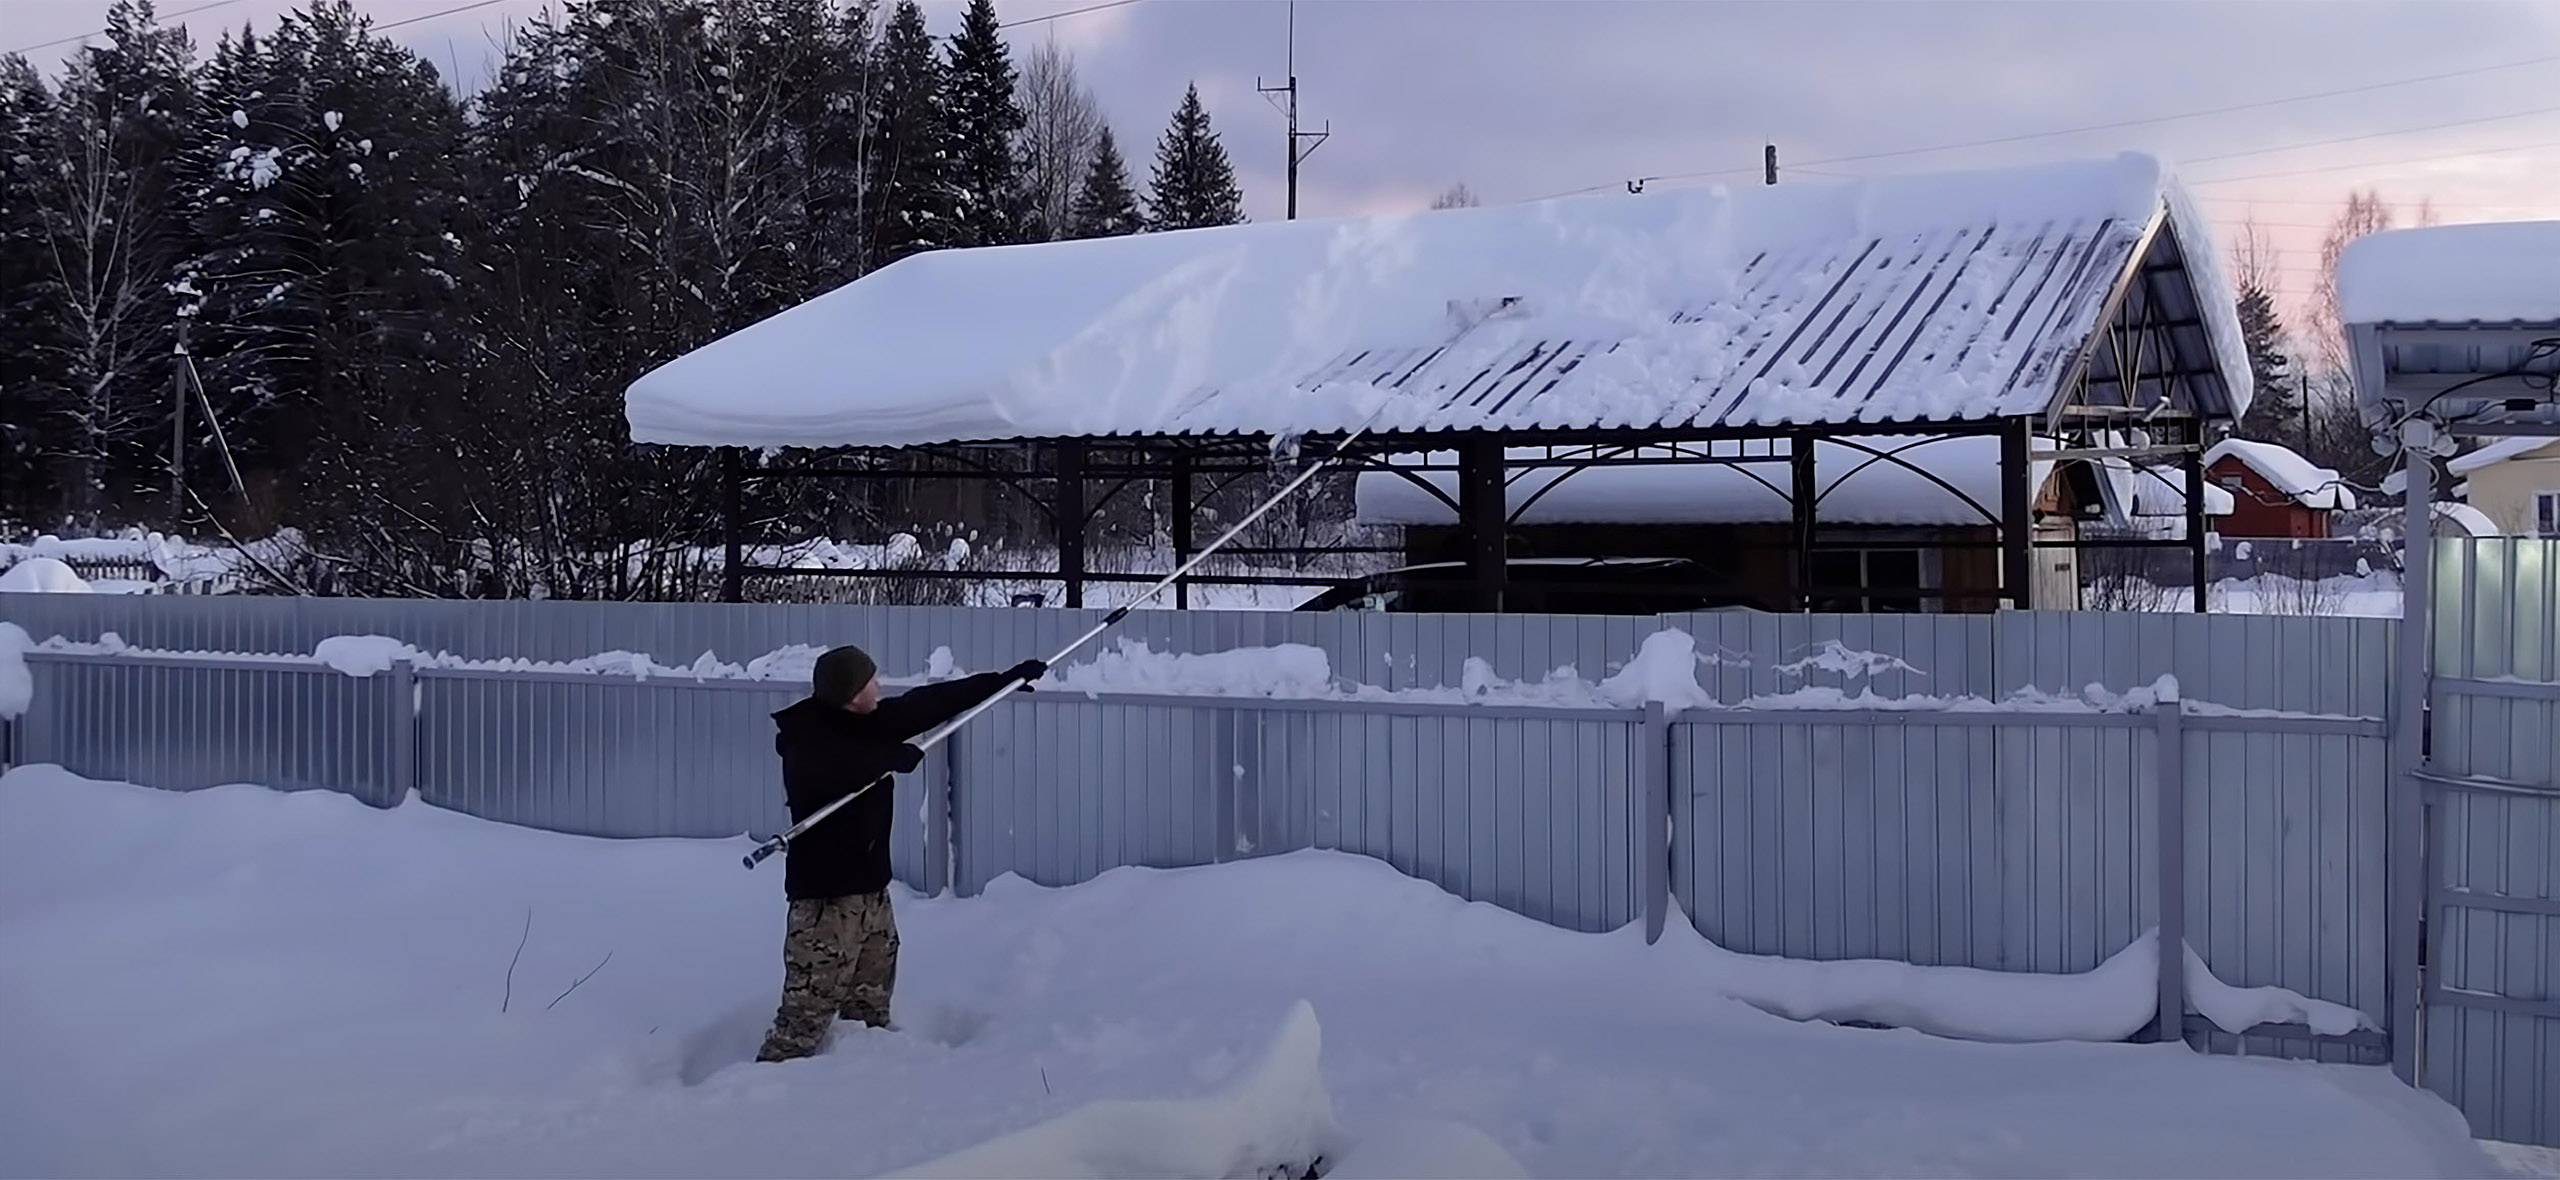 5 видео о приспособлениях для чистки снега с крыш домов, беседок и теплиц